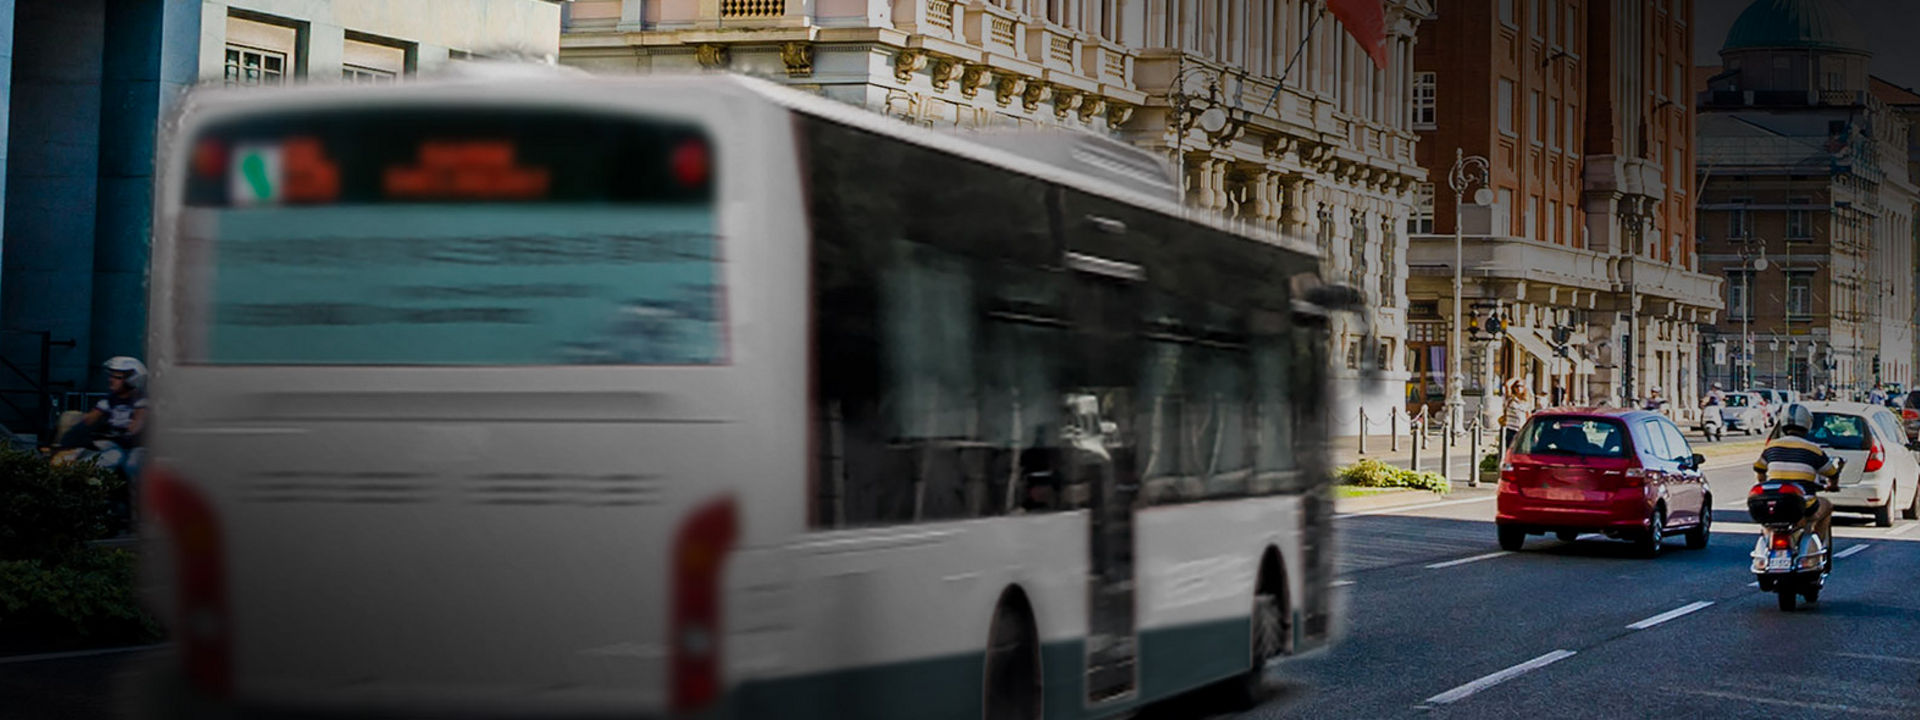 Denna bild visar badelen av en buss med Bridgestones bussdäck för stadstrafik körande i stadskärnan.